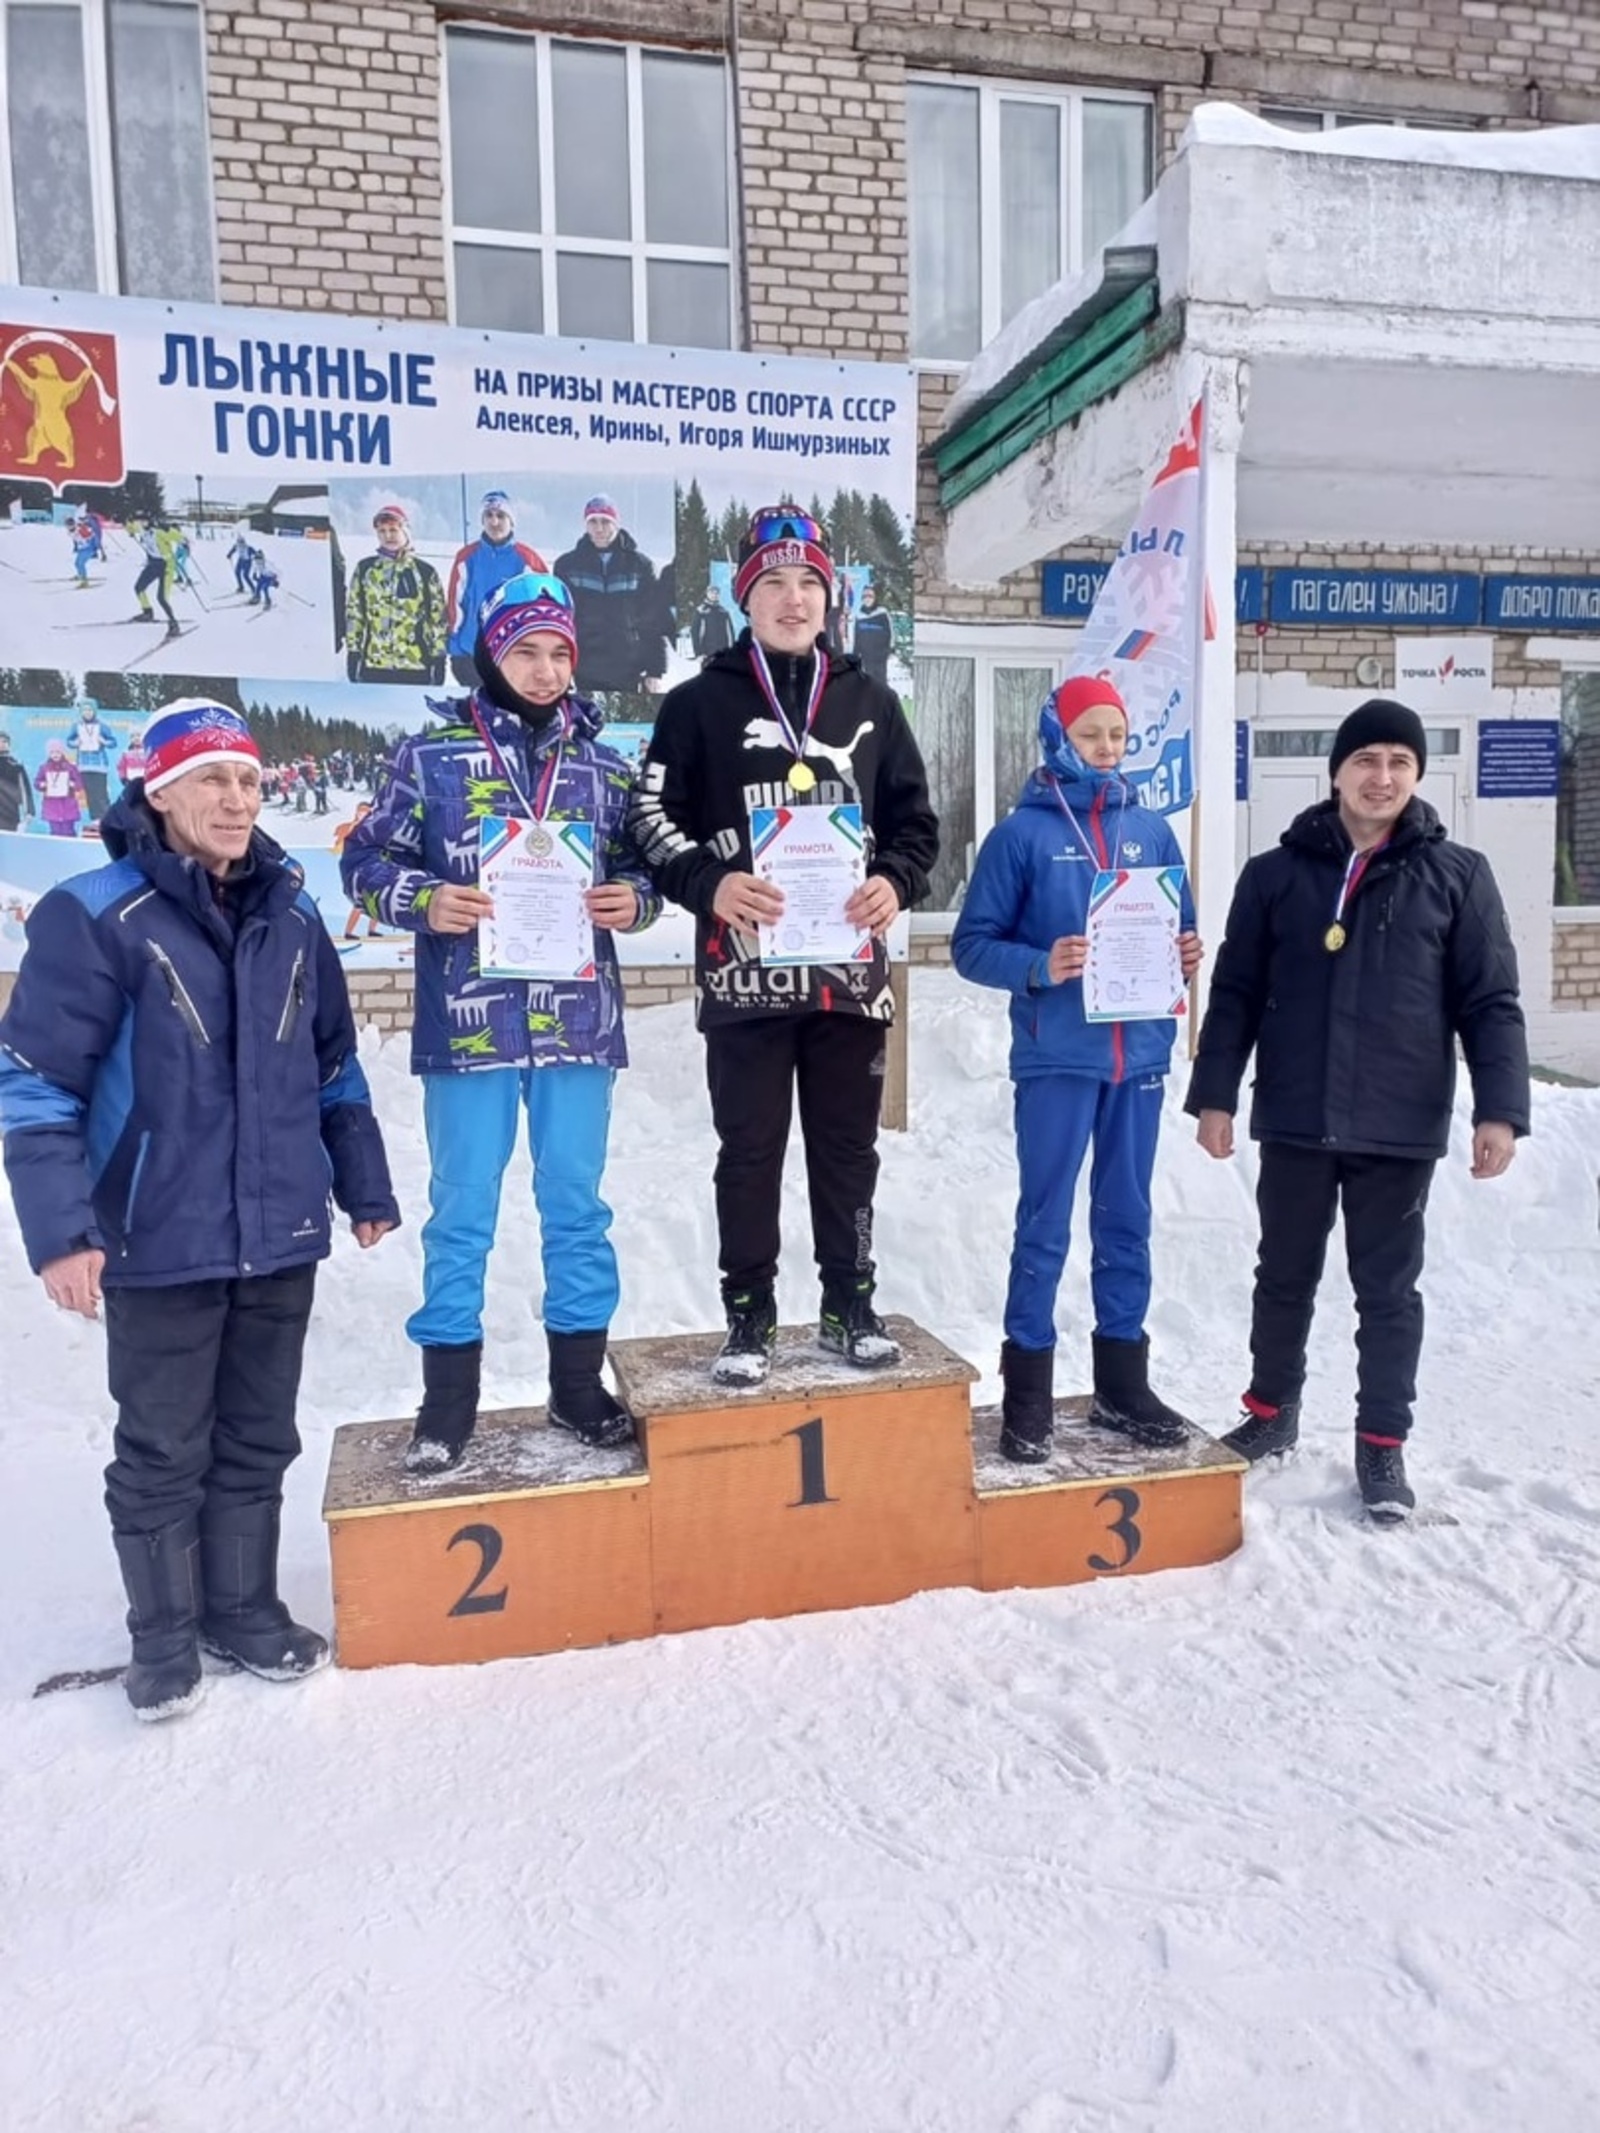 Жители Мишкинского района приняли участие в лыжных гонках, посвященных мастерам спорта Ишмурзиным